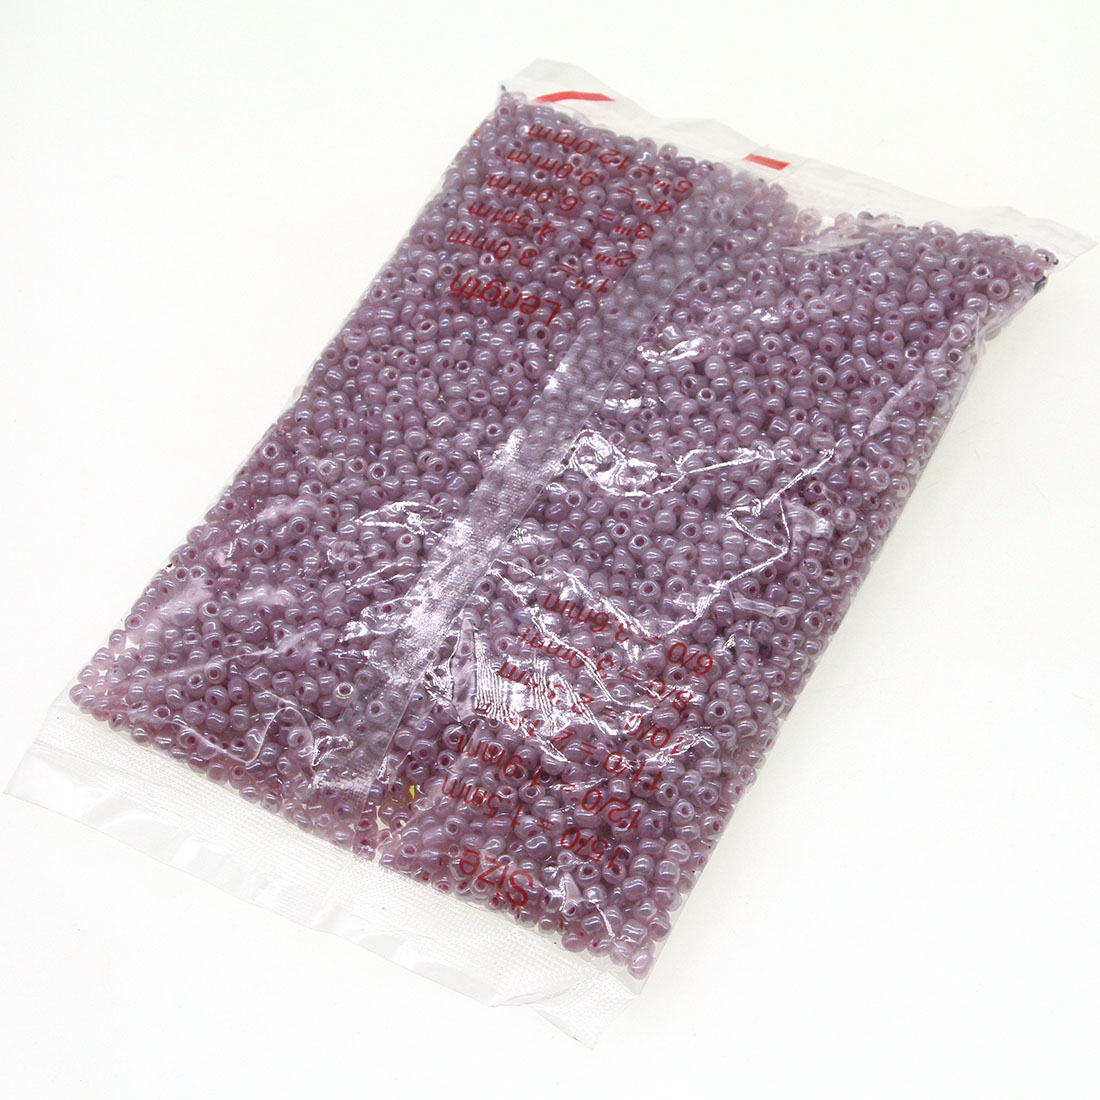 Grape violet 2mm 30000 pack